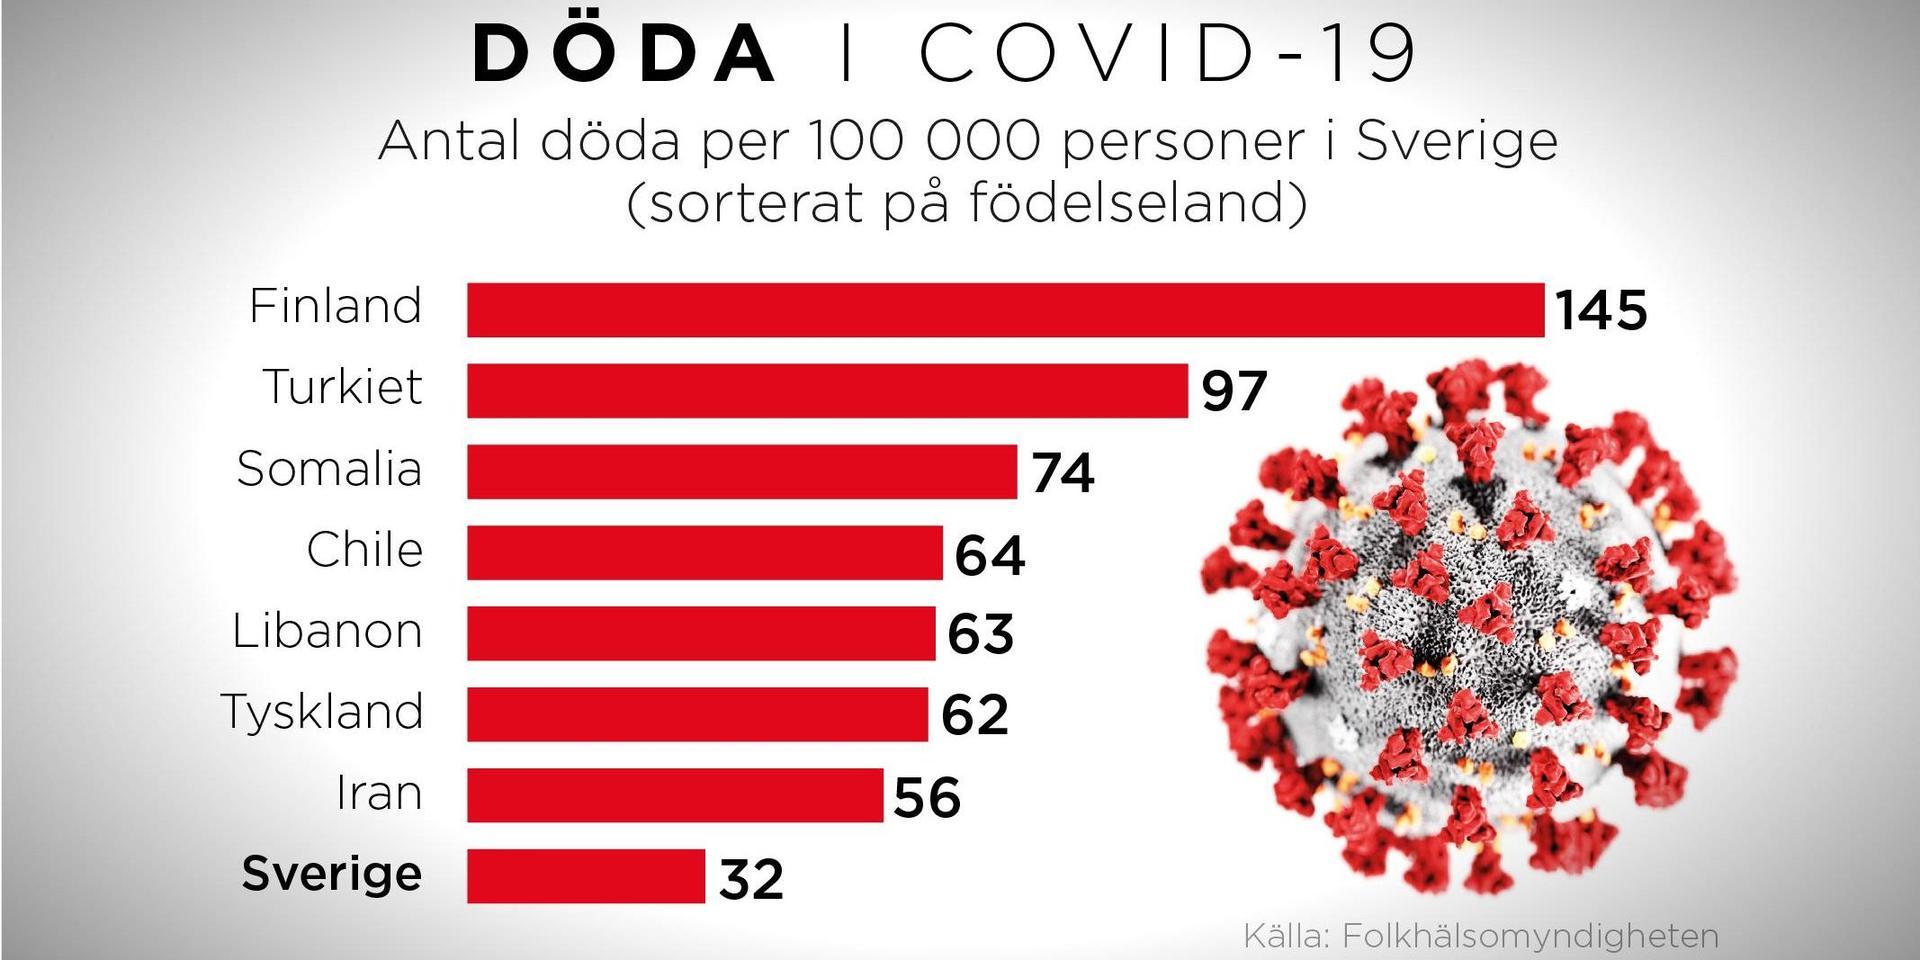 Bland invandrargrupper i Sverige är dödligheten vid bekräftad covid-19 högst för personer födda i Finland, 145 per 100 000 invånare.